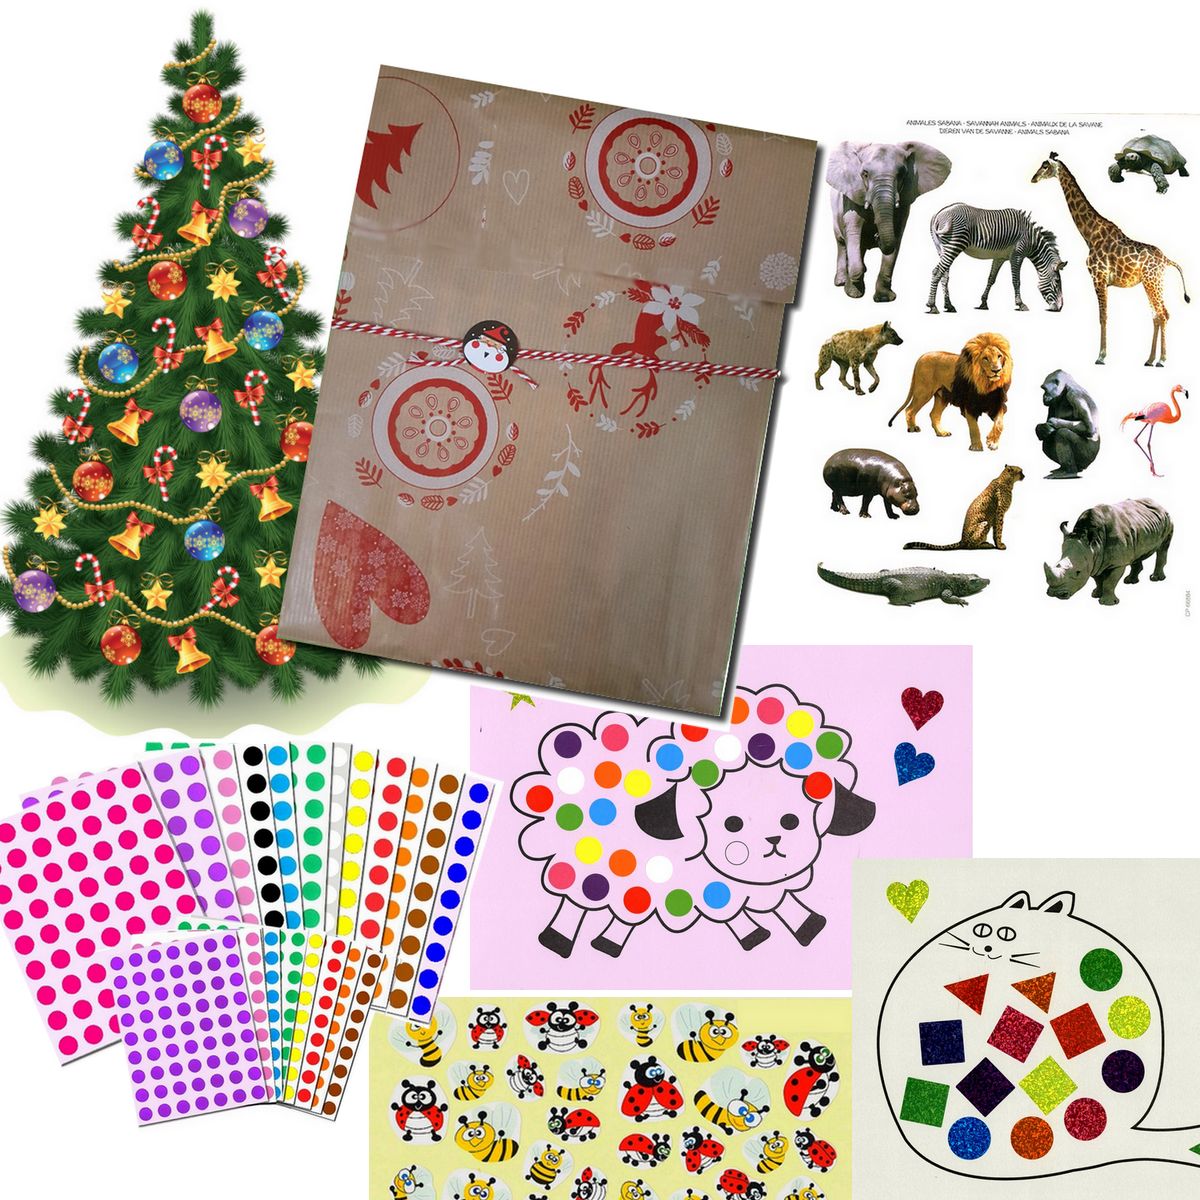 Kits Creatifs - Cadeaux pour enfants - MaGommette